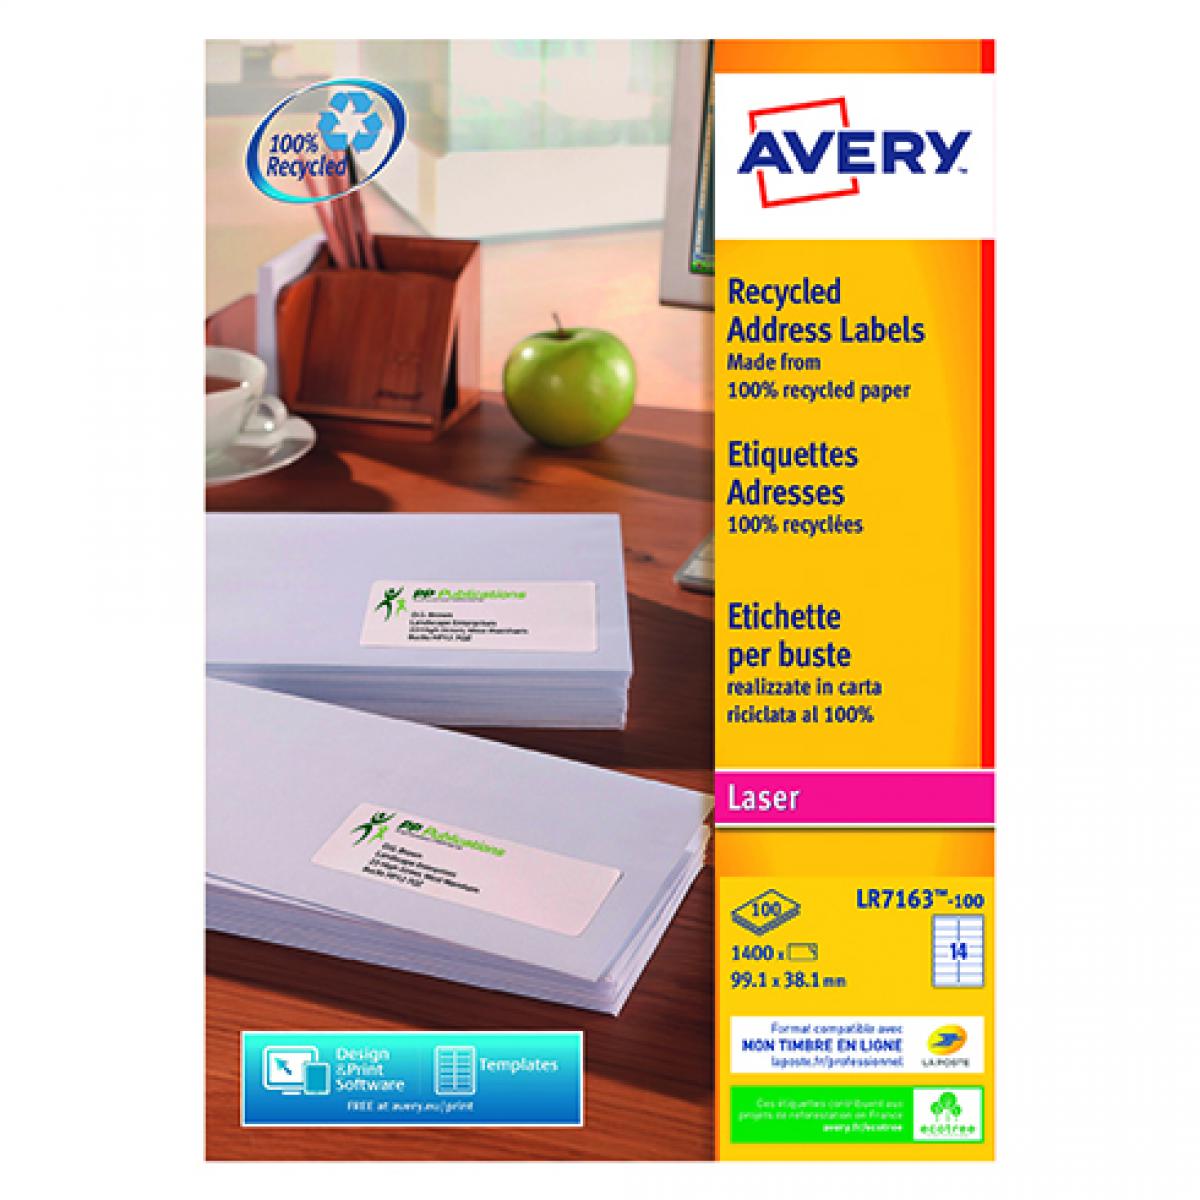 Avery - Etiquettes adresses Avery recyclées laser 99,1 x 38,1 mm LR 7163 - Boîte de 1400 - Accessoires Bureau